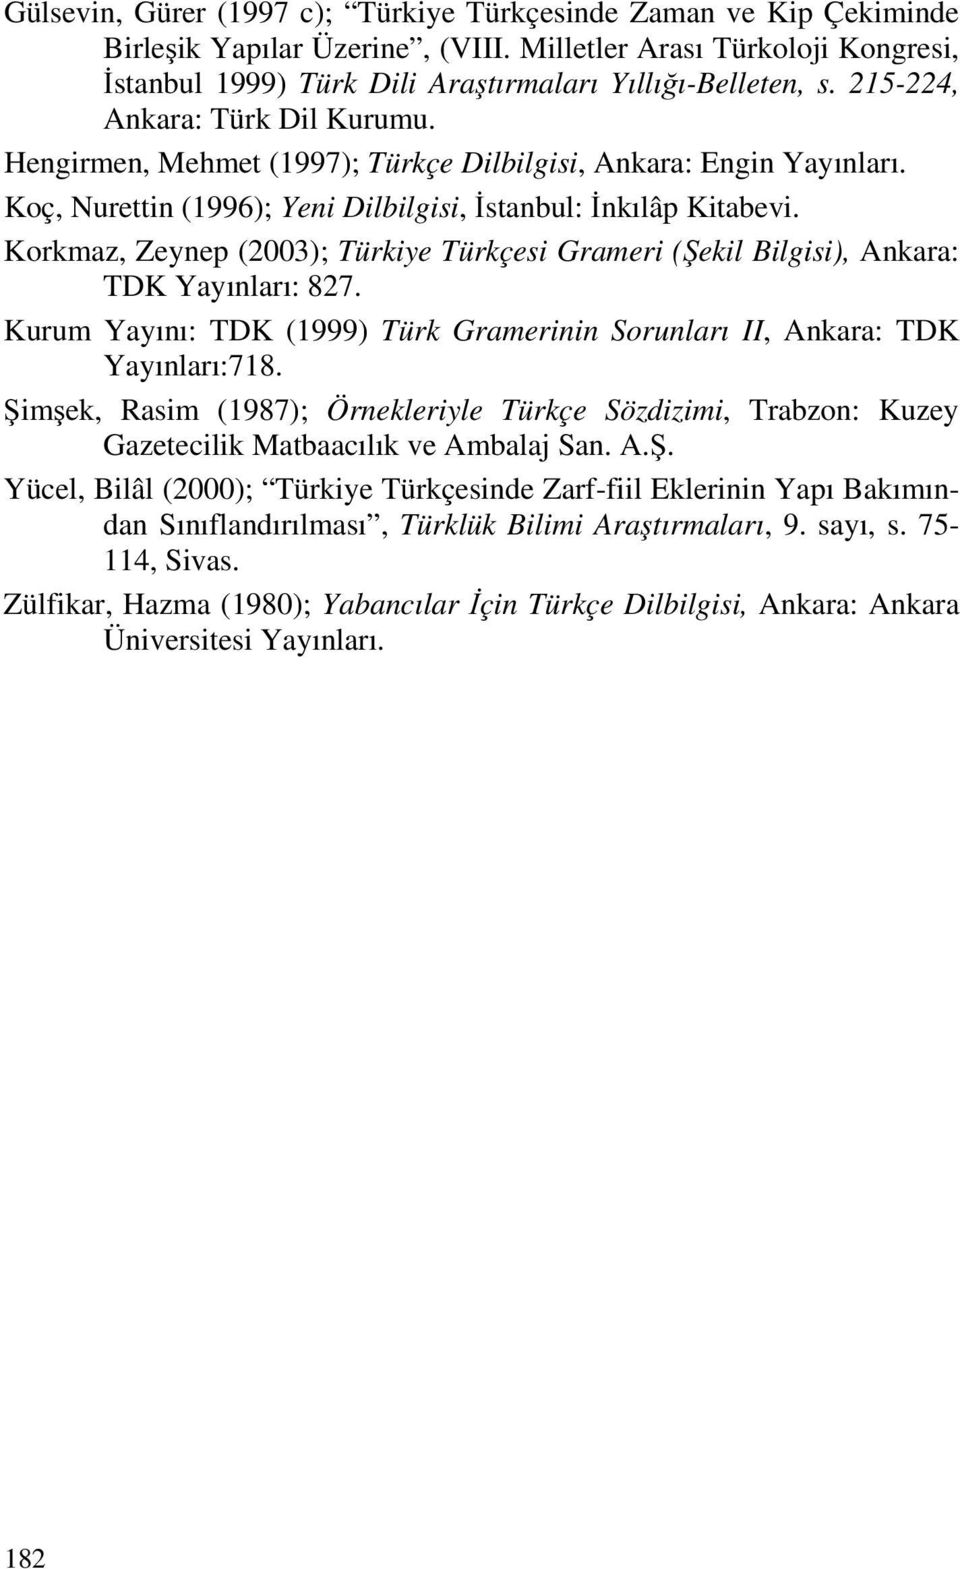 Korkmaz, Zeynep (2003); Türkiye Türkçesi Grameri (Şekil Bilgisi), Ankara: TDK Yayınları: 827. Kurum Yayını: TDK (1999) Türk Gramerinin Sorunları II, Ankara: TDK Yayınları:718.